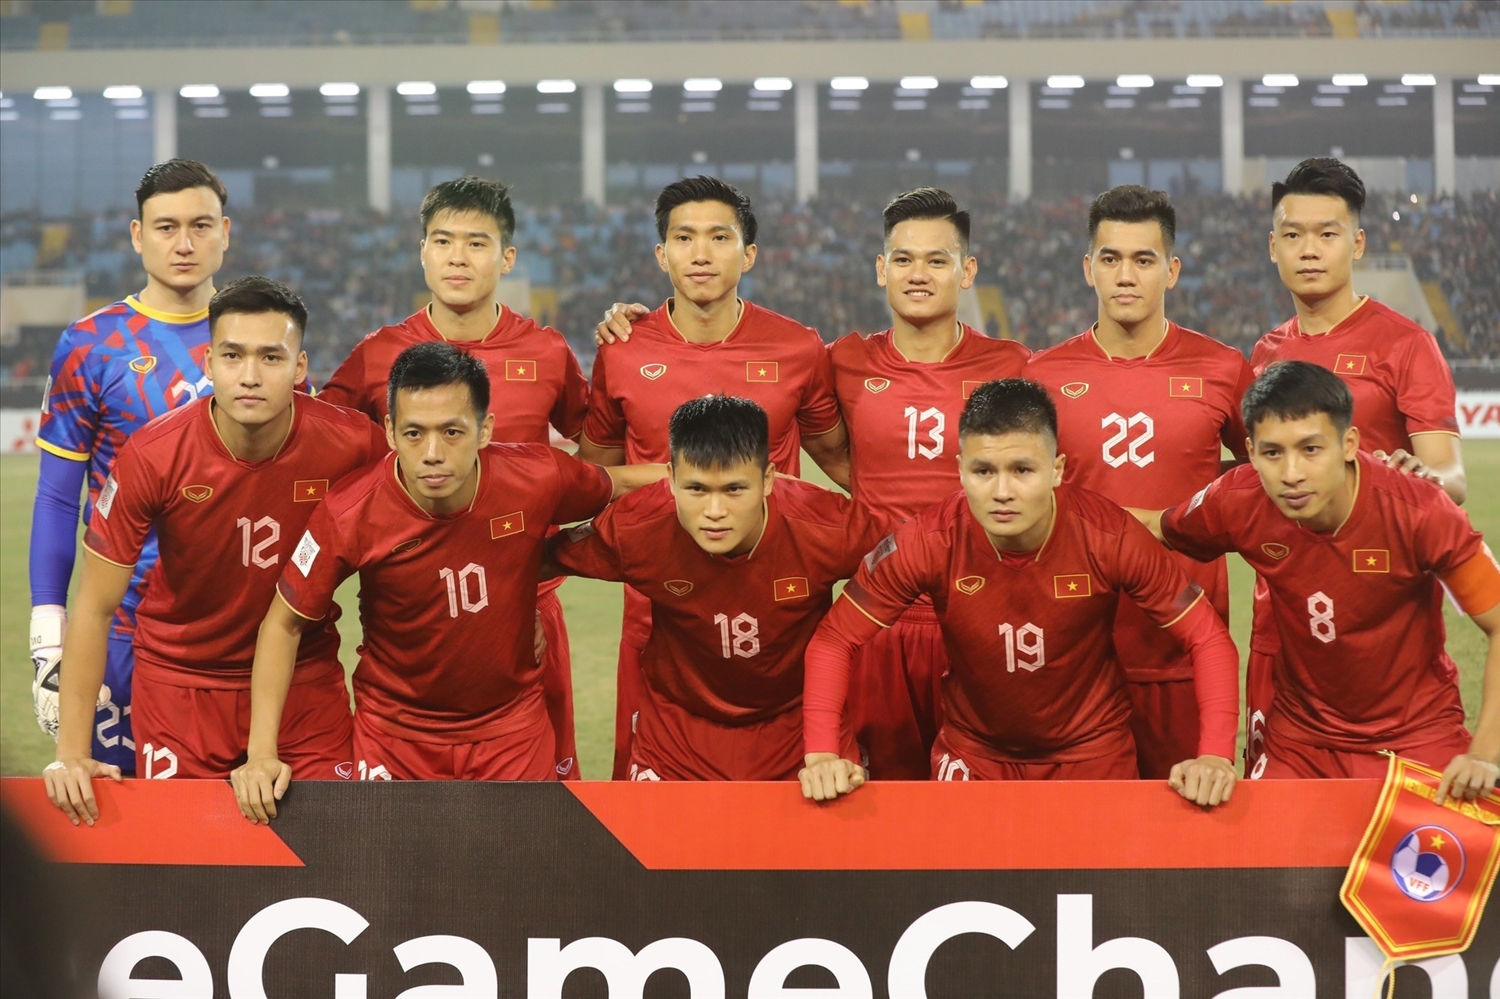 Đội tuyển Việt Nam sẽ "thay máu" mạnh mẽ hướng đến mục tiêu dự World Cup 2026.Ảnh: Minh Quyết/TTXVN